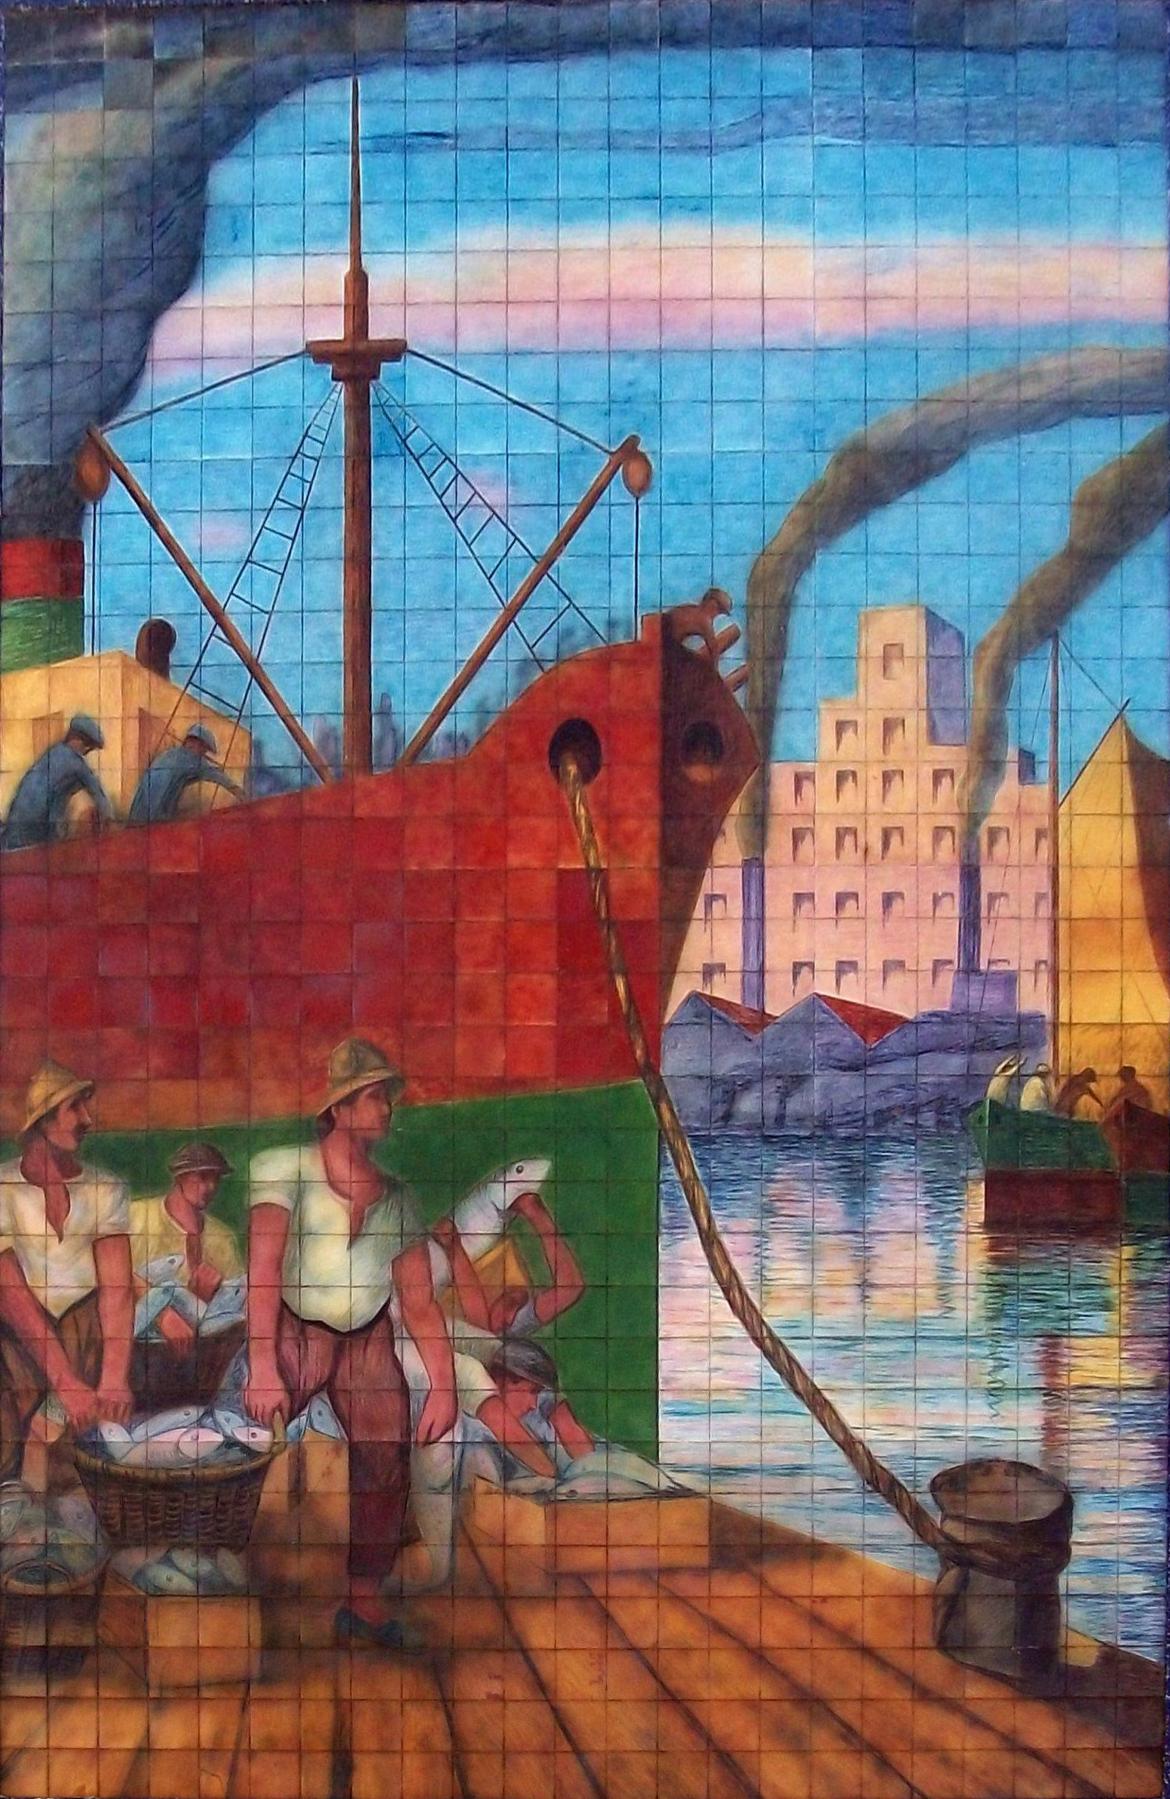 Cuadro Regreso de la pesca exhibido en un mural en la calle Caminito